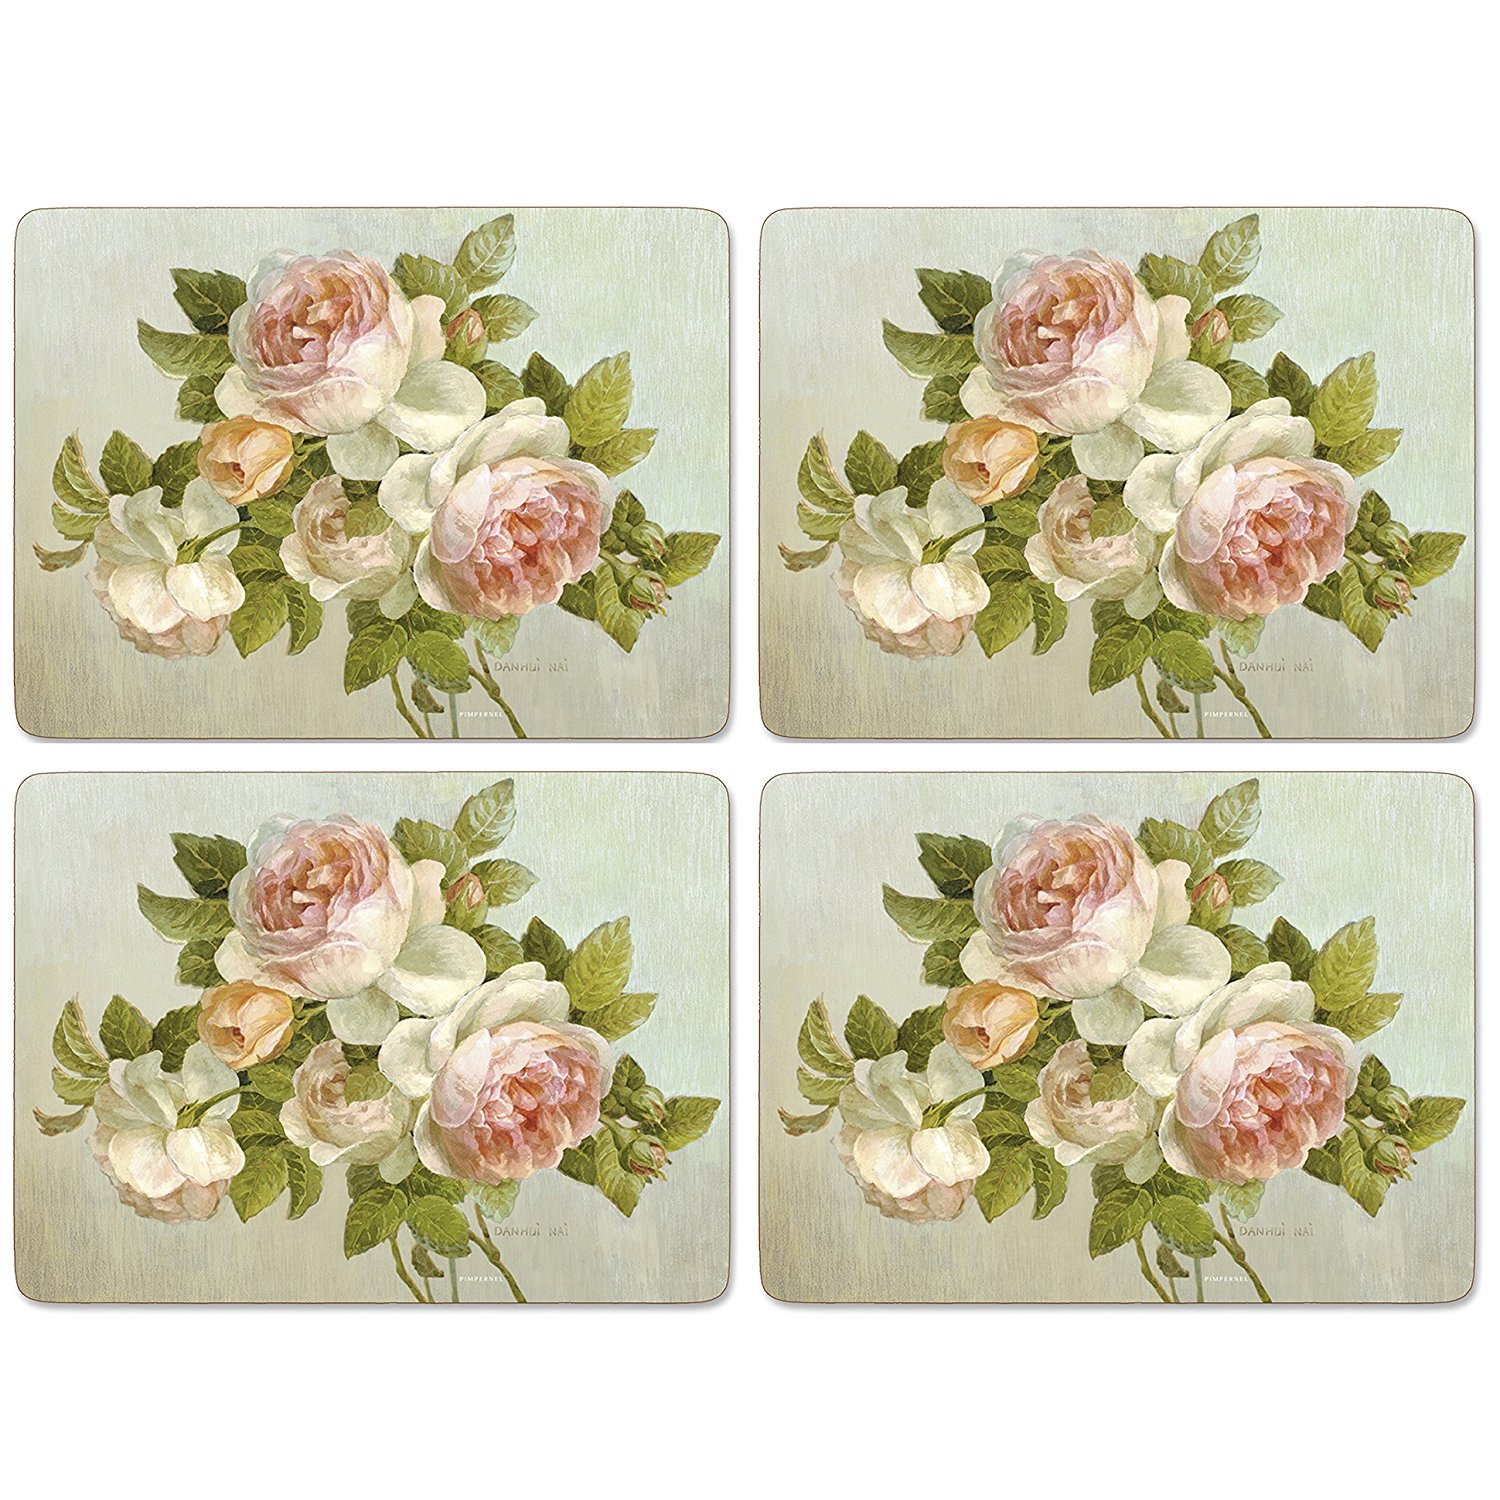 Amazon.com: Pimpernel Antique Roses Placemats - 4 Count: Home & Kitchen